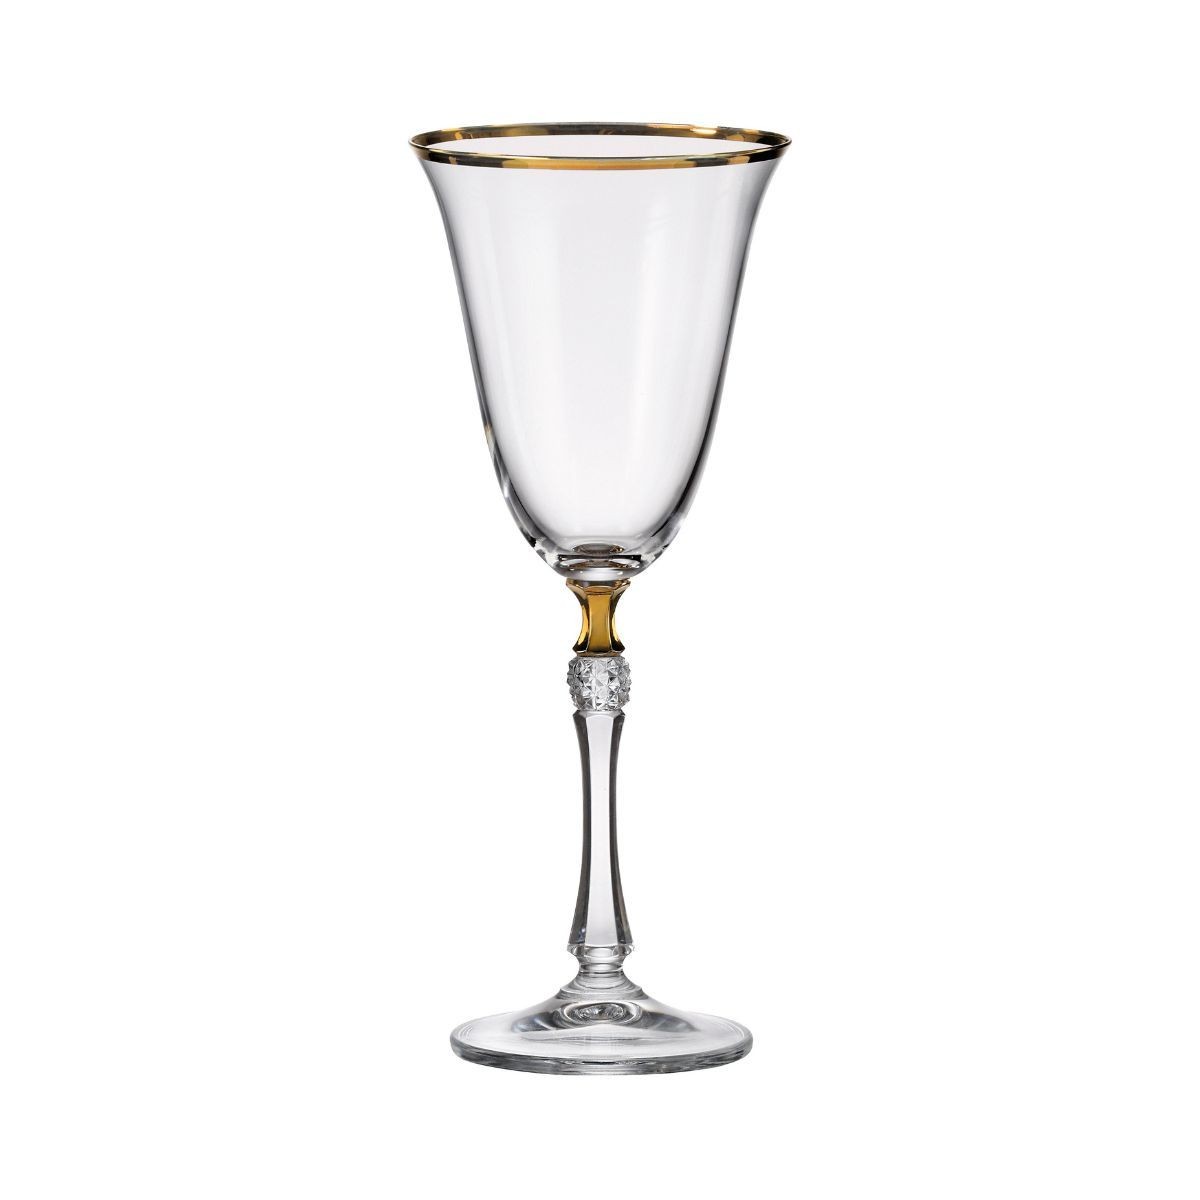 Set de 6 pahare pentru vin alb, transparent, din cristal de Bohemia, 350 ml, Zoya